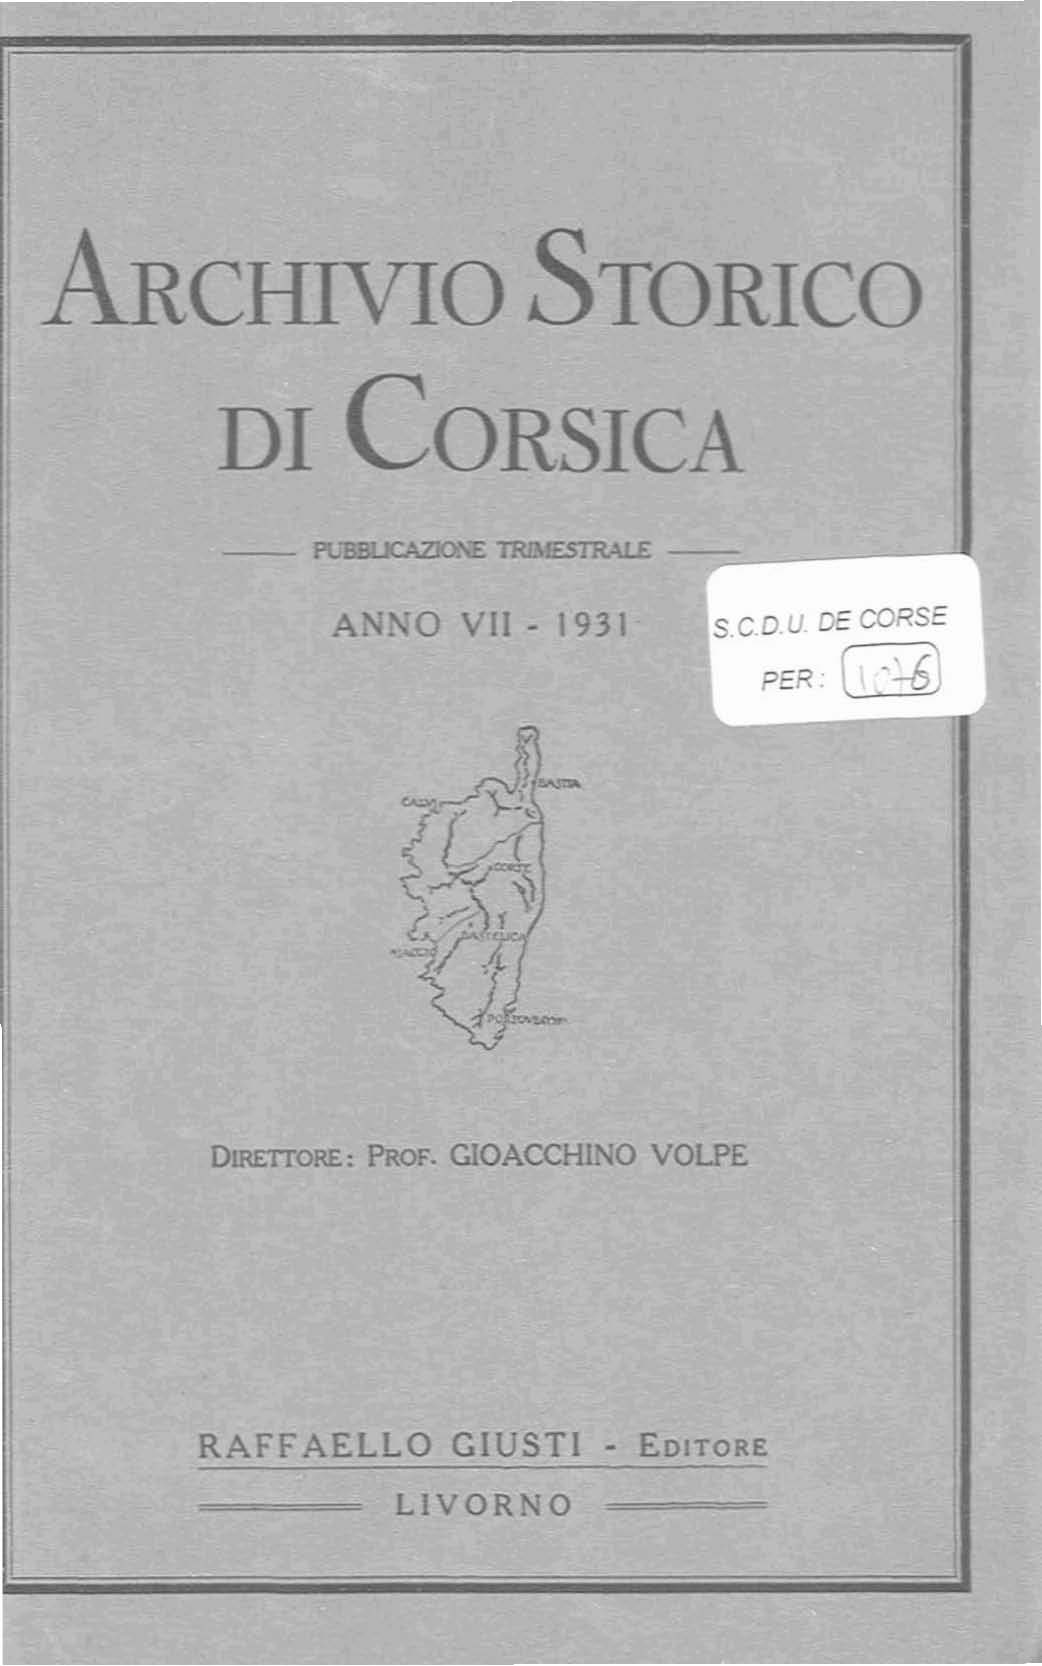 >Archivio Storico di Corsica (1931)